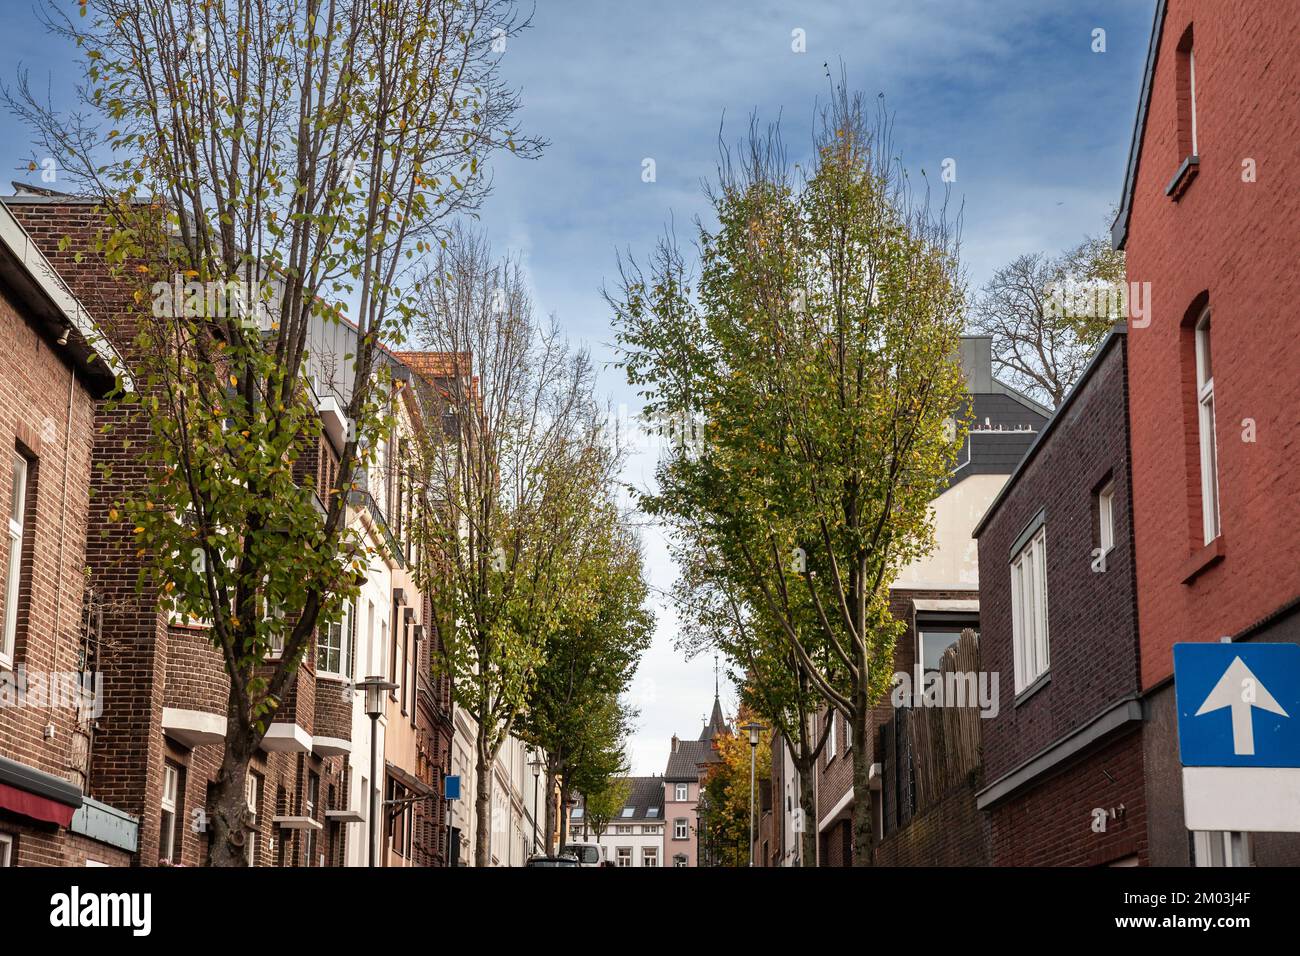 Imagen de un típico paisaje holandés de un pueblo en Vaals, limburgo, Países Bajos. Vaals es una ciudad en el extremo sureste del provin holandés Foto de stock